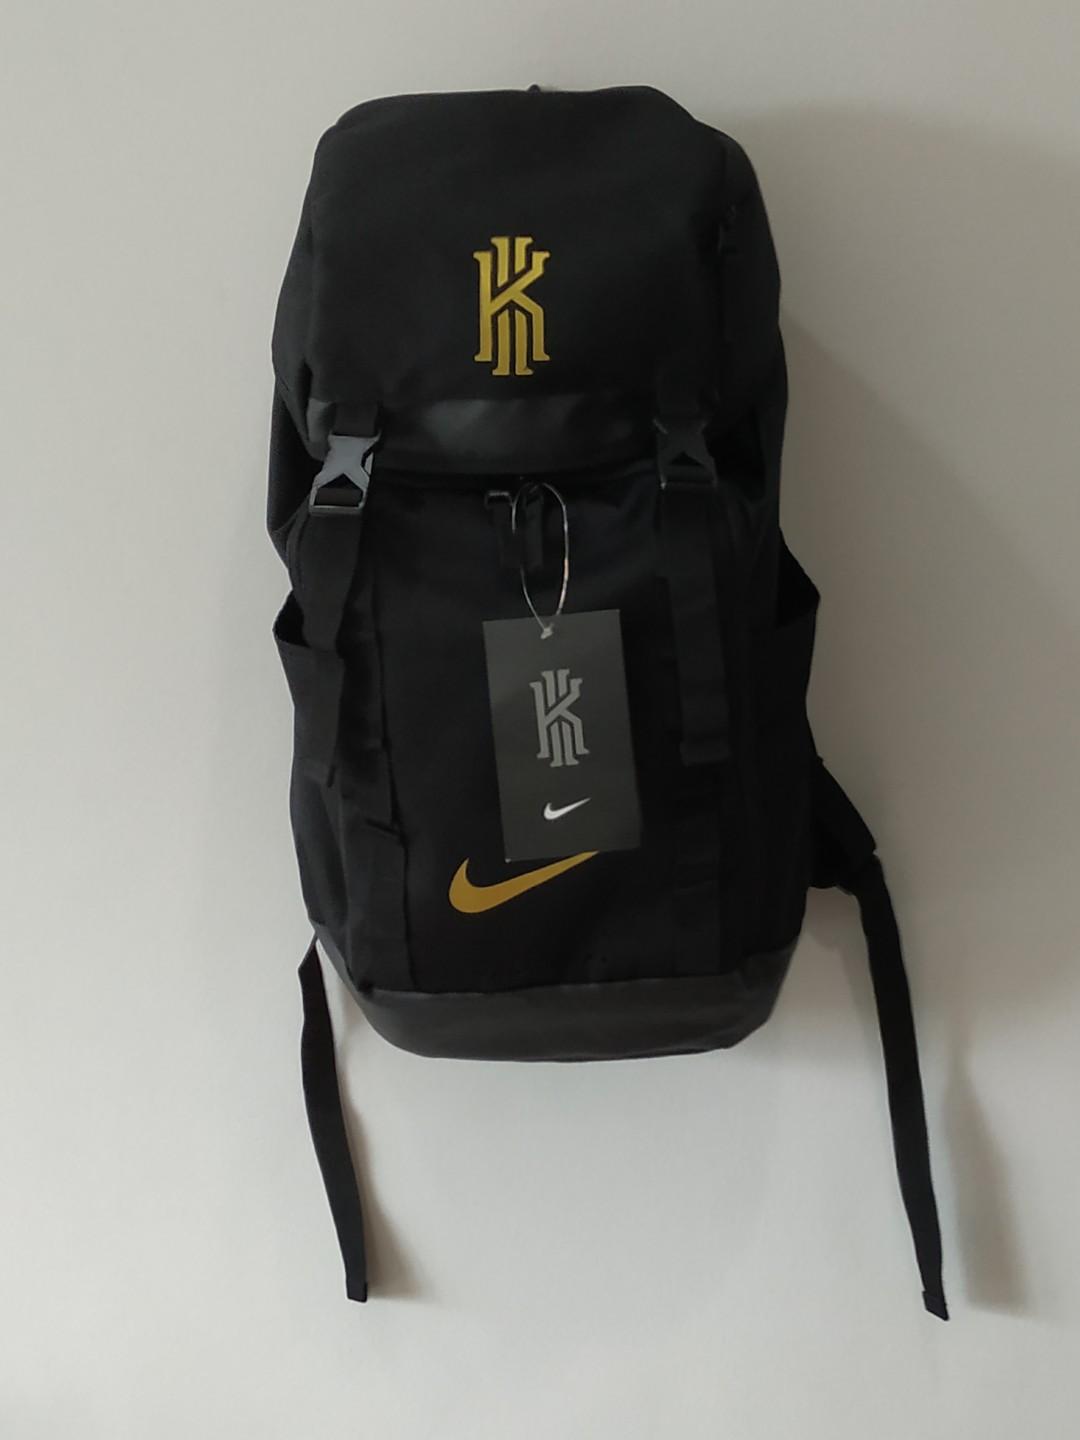 Kyrie Irving basketball backpack, Men's 